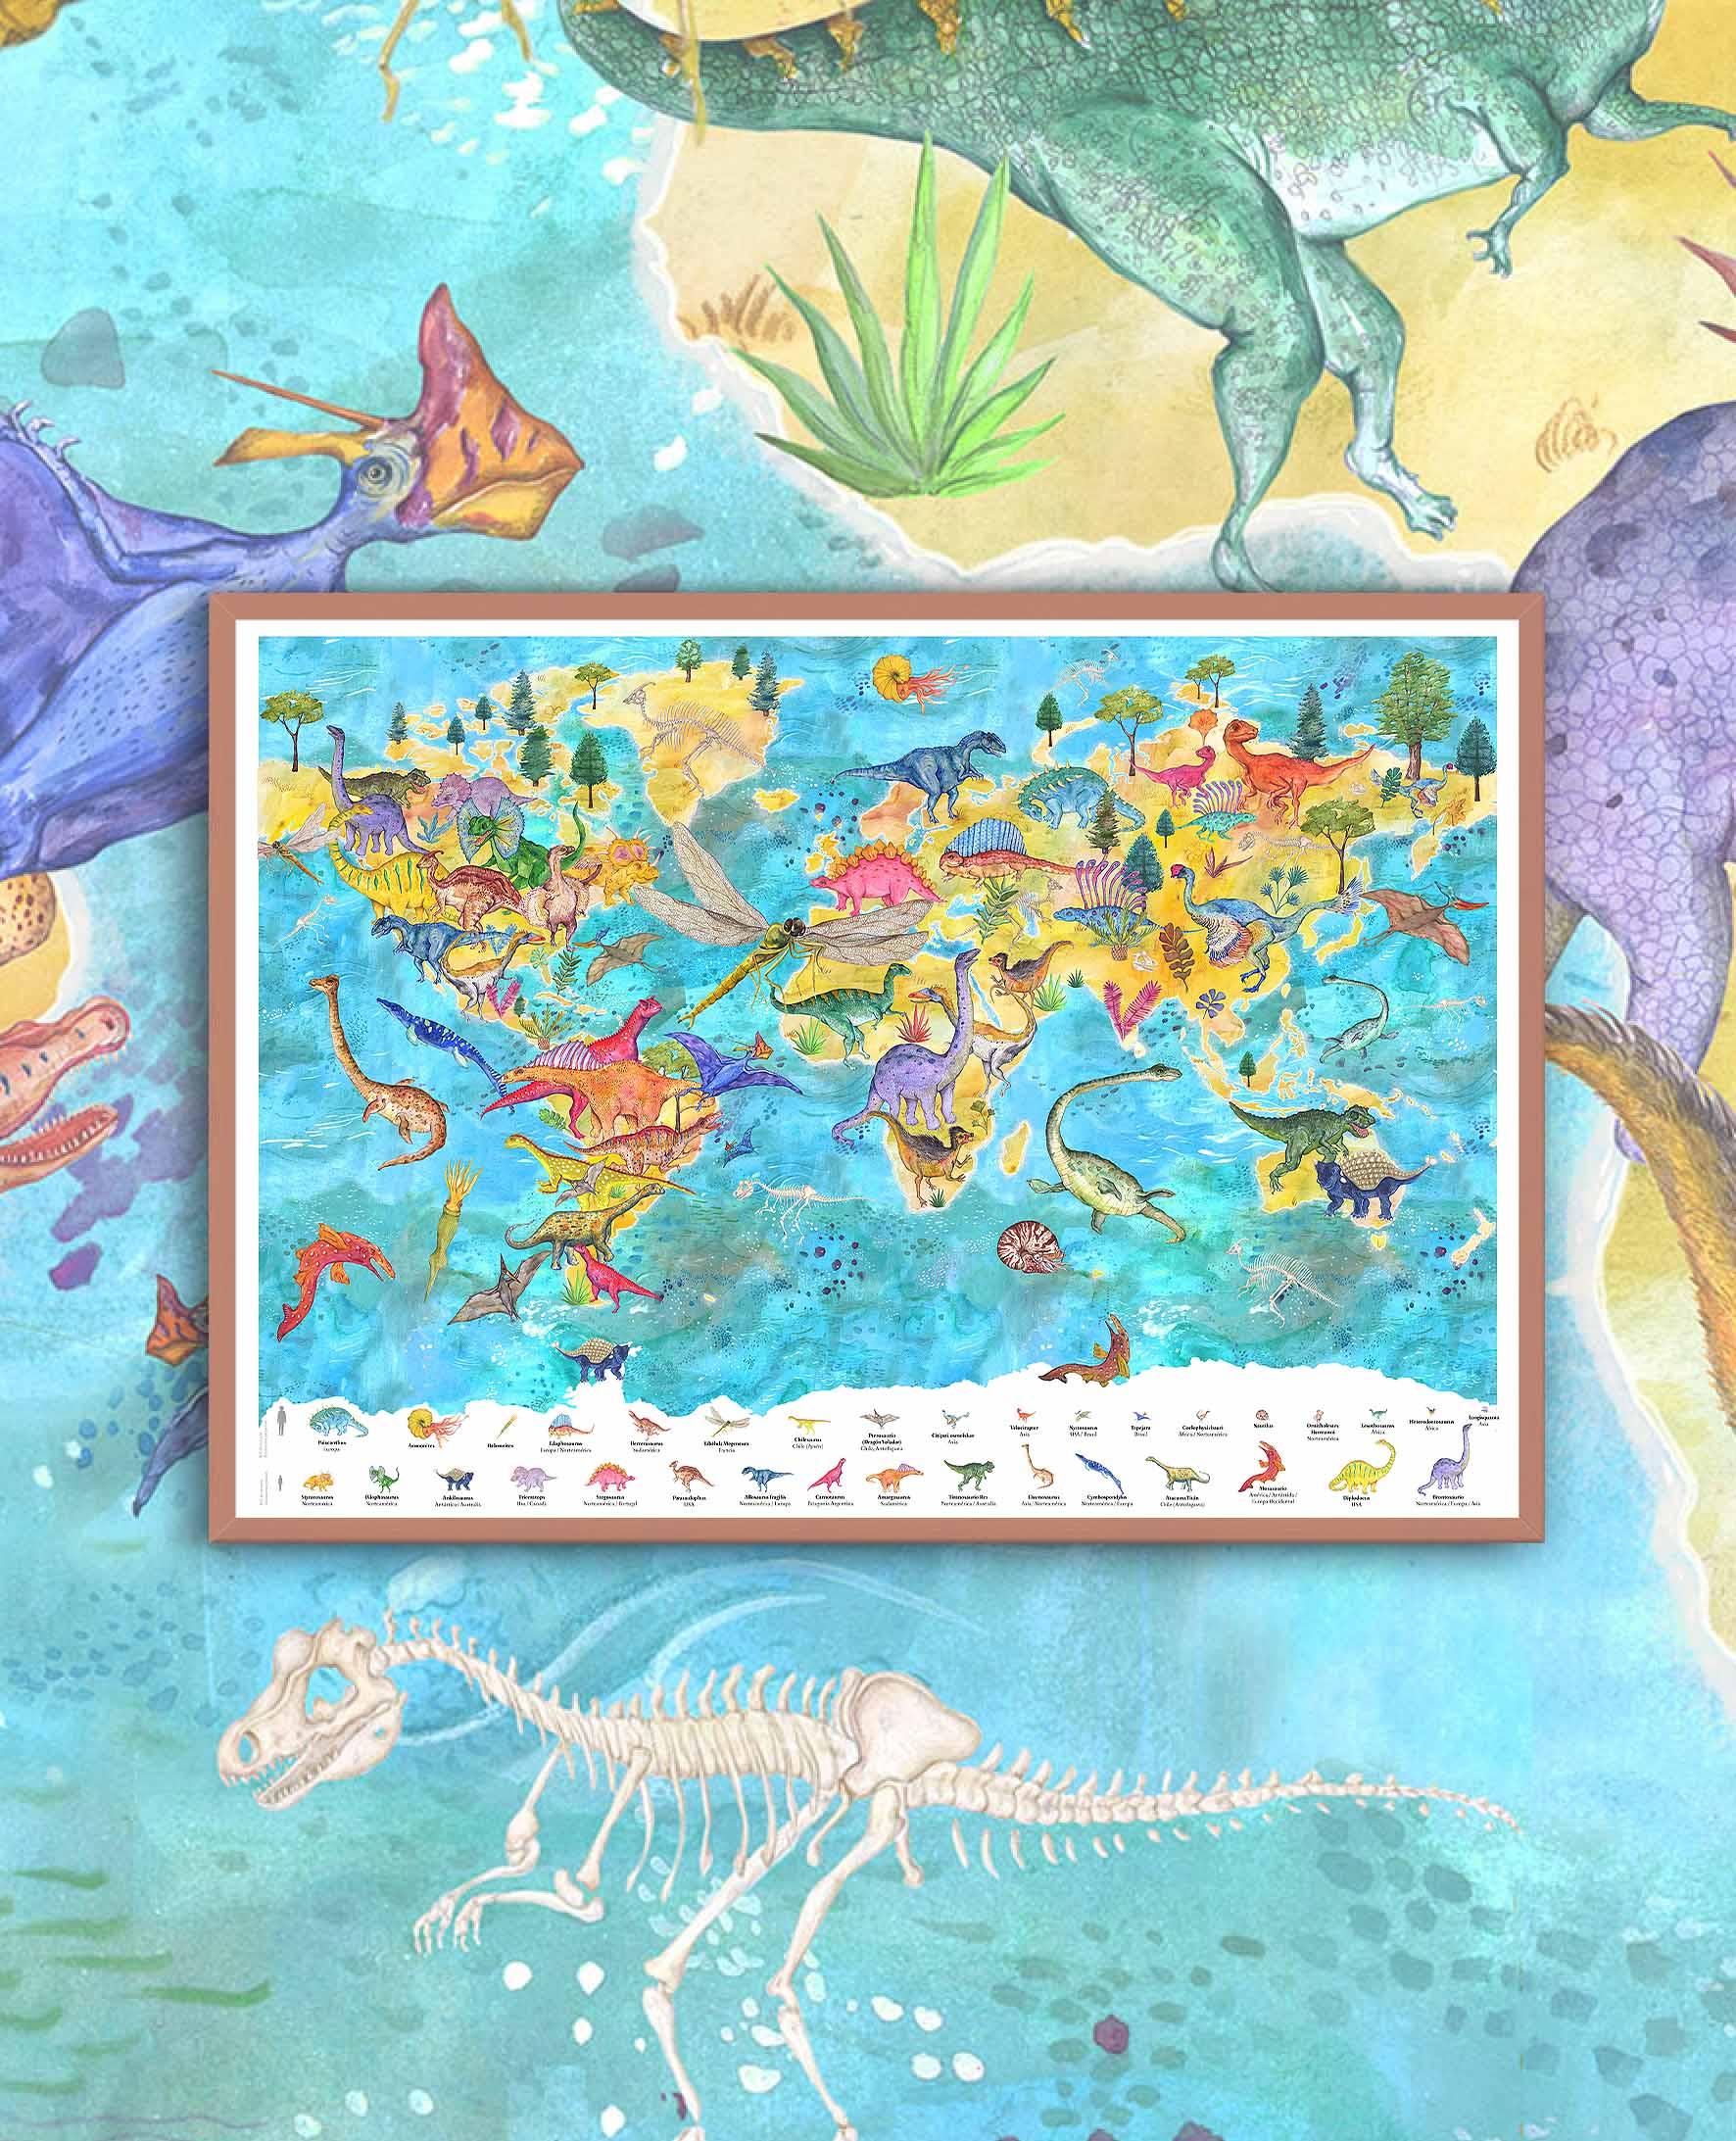 Mapa del Mundo de Dinosaurios - Enmarcado - Mappin